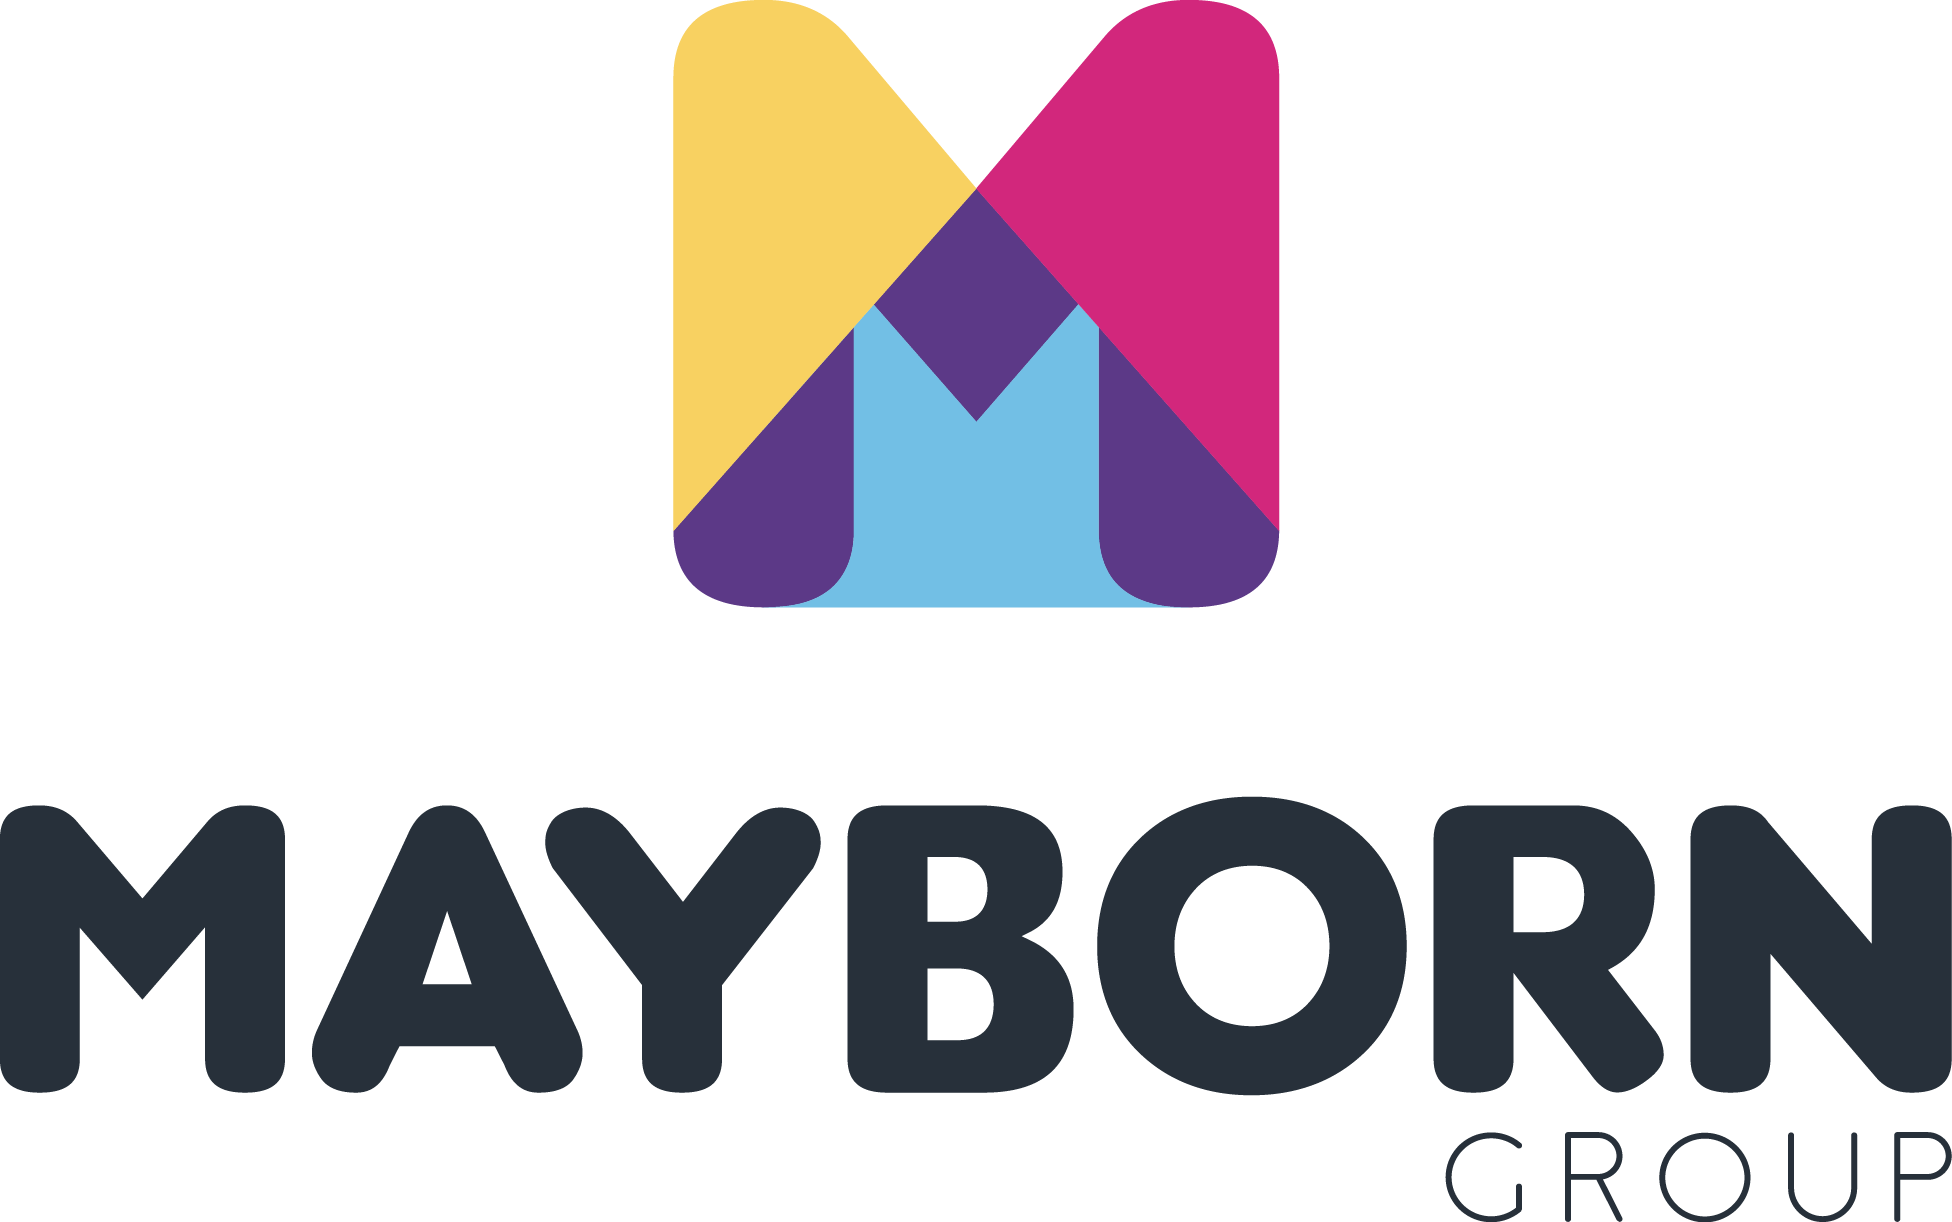 Mayborn Group logo